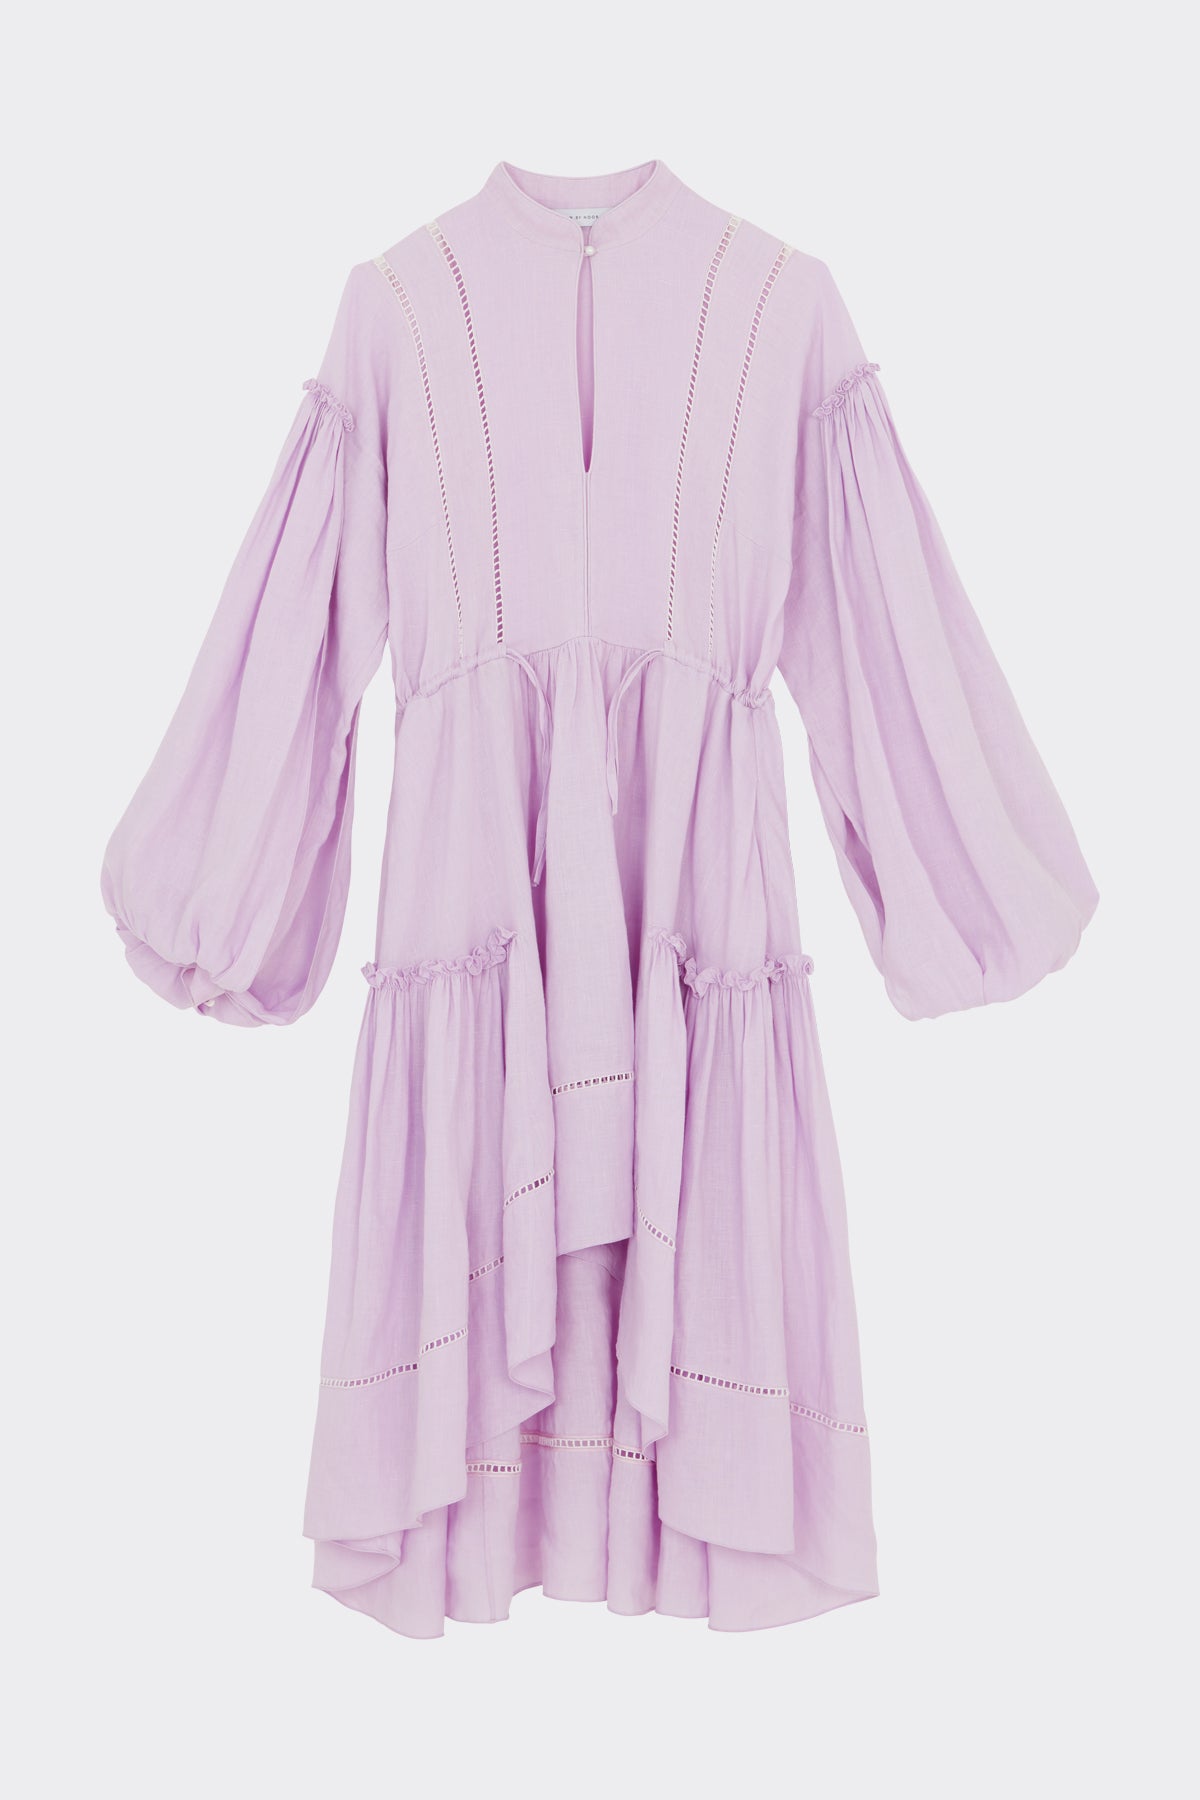 Hero Dress in Lavender Mist| Noon by Noor